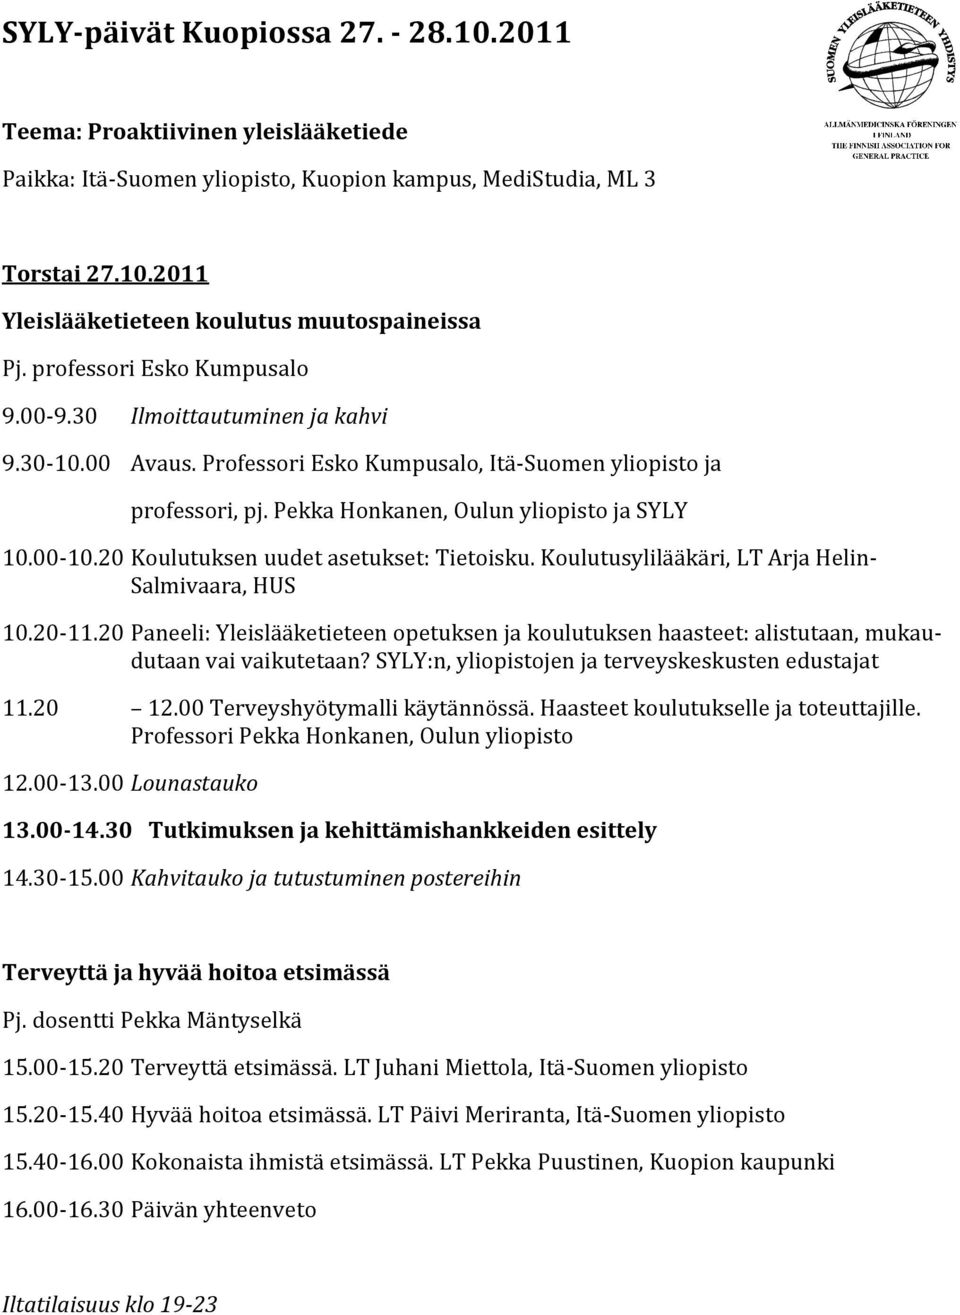 20 Koulutuksen uudet asetukset: Tietoisku. Koulutusylilääkäri, LT Arja Helin- Salmivaara, HUS 10.20-11.